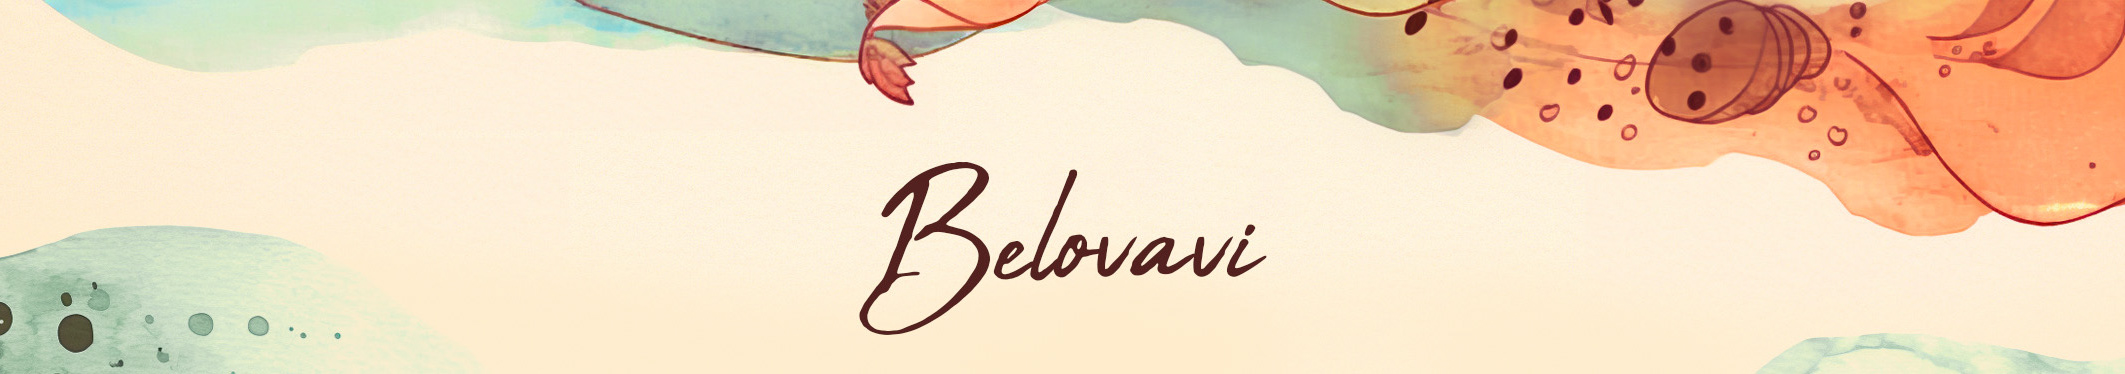 Victoria Belova's profile banner